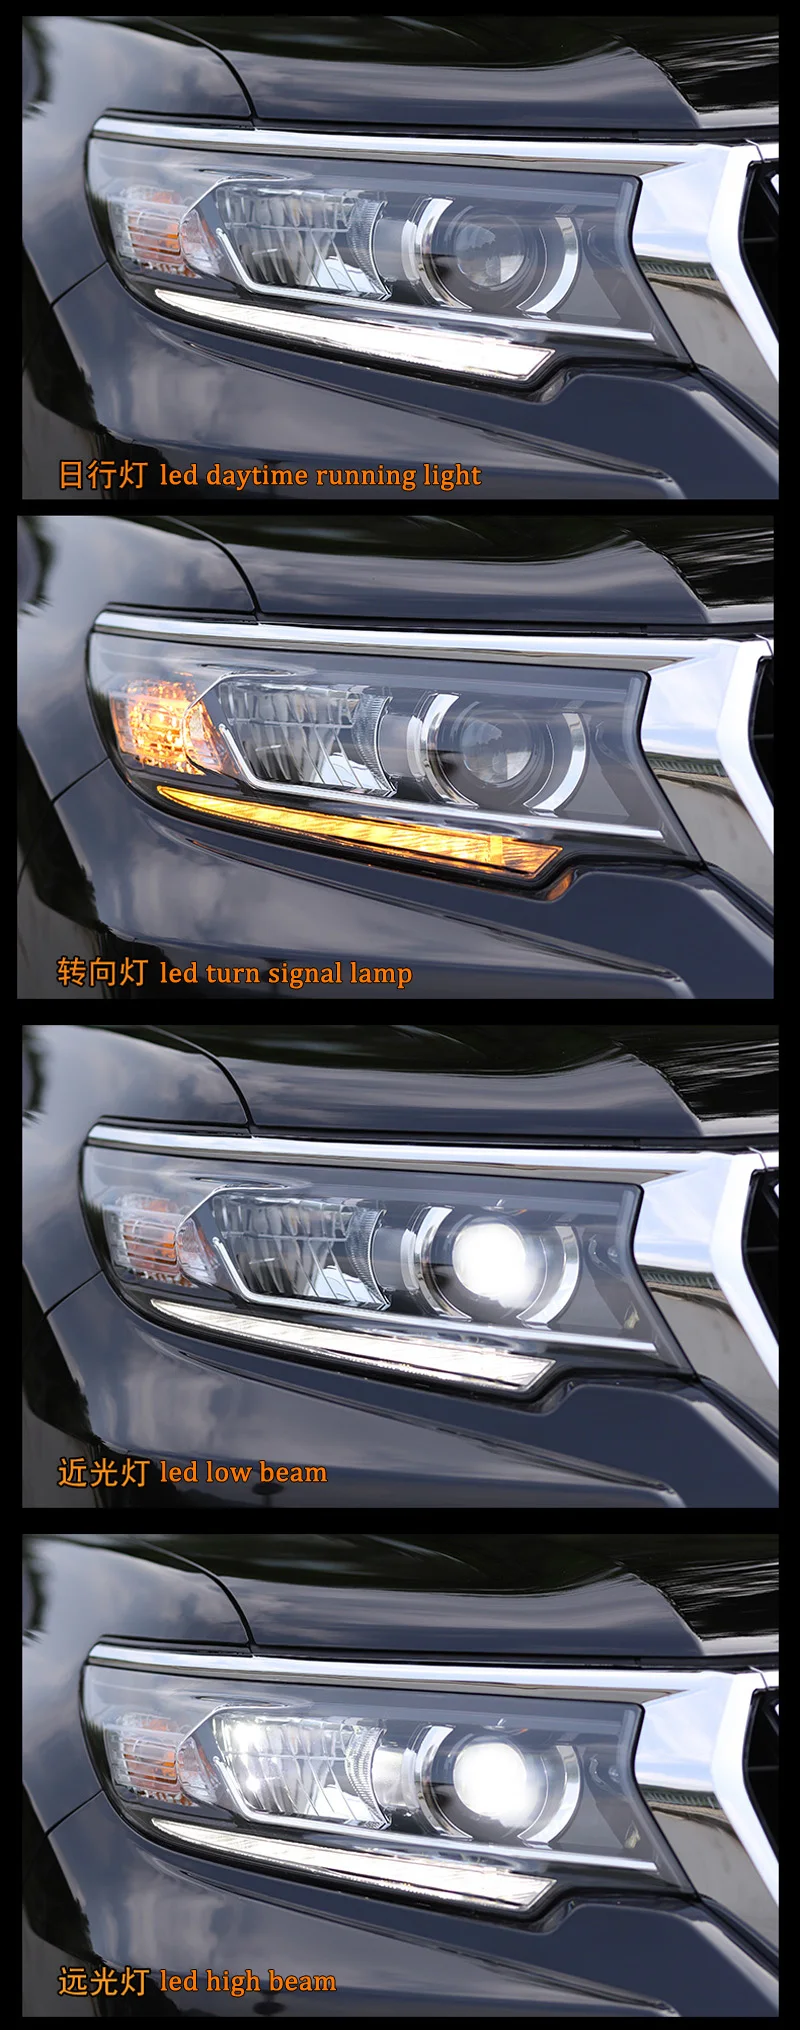 Автомобильный стильный светодиодный фонарь для Toyota Land Cruiser Prado FJ150 LC150 светодиодный DRL динамический сигнал поворота головная лампа в сборе